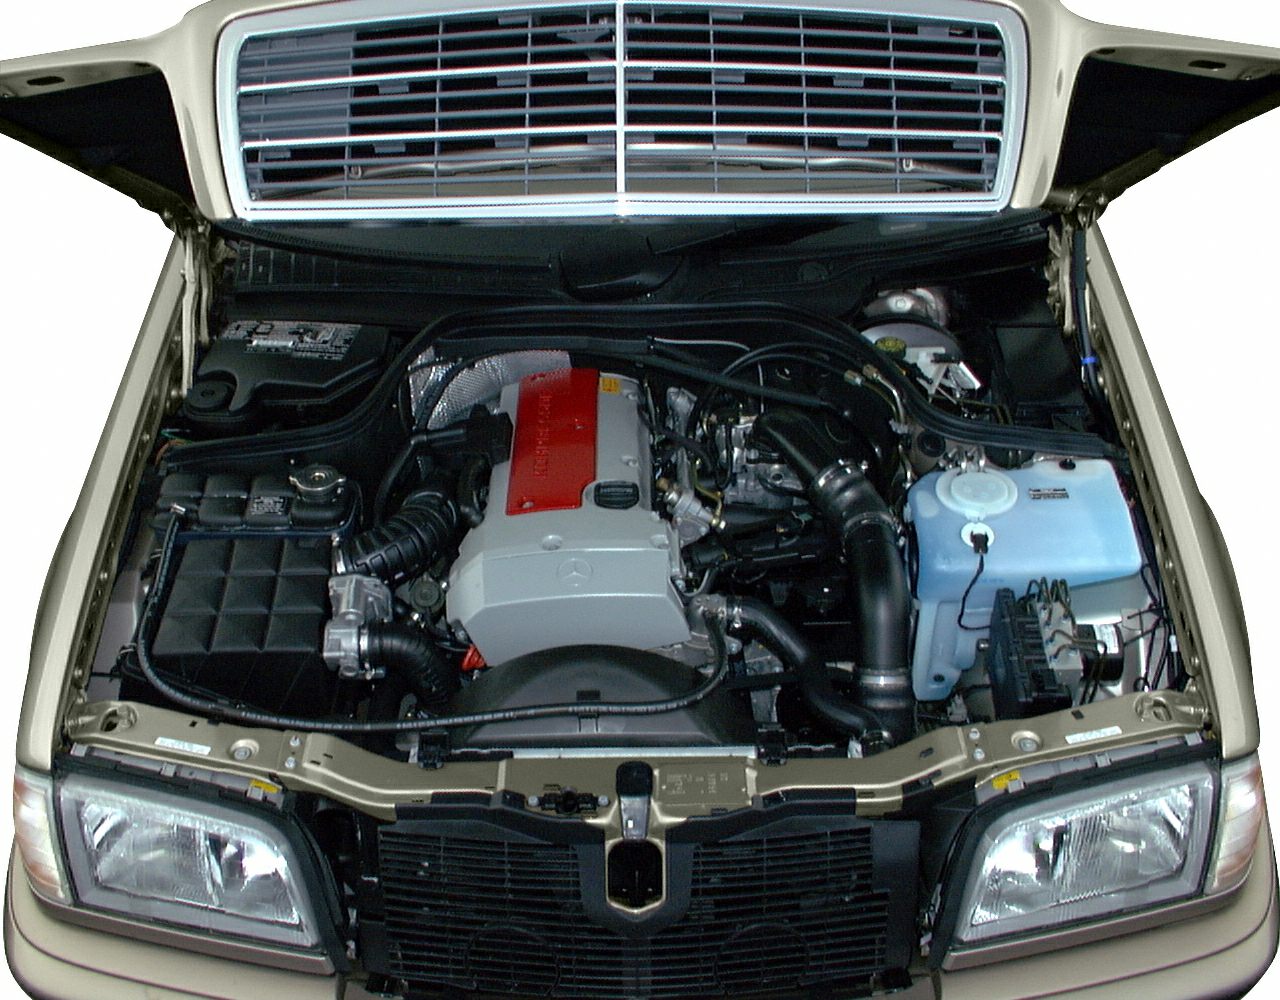 mercedes c230 kompressor engine oil level alert